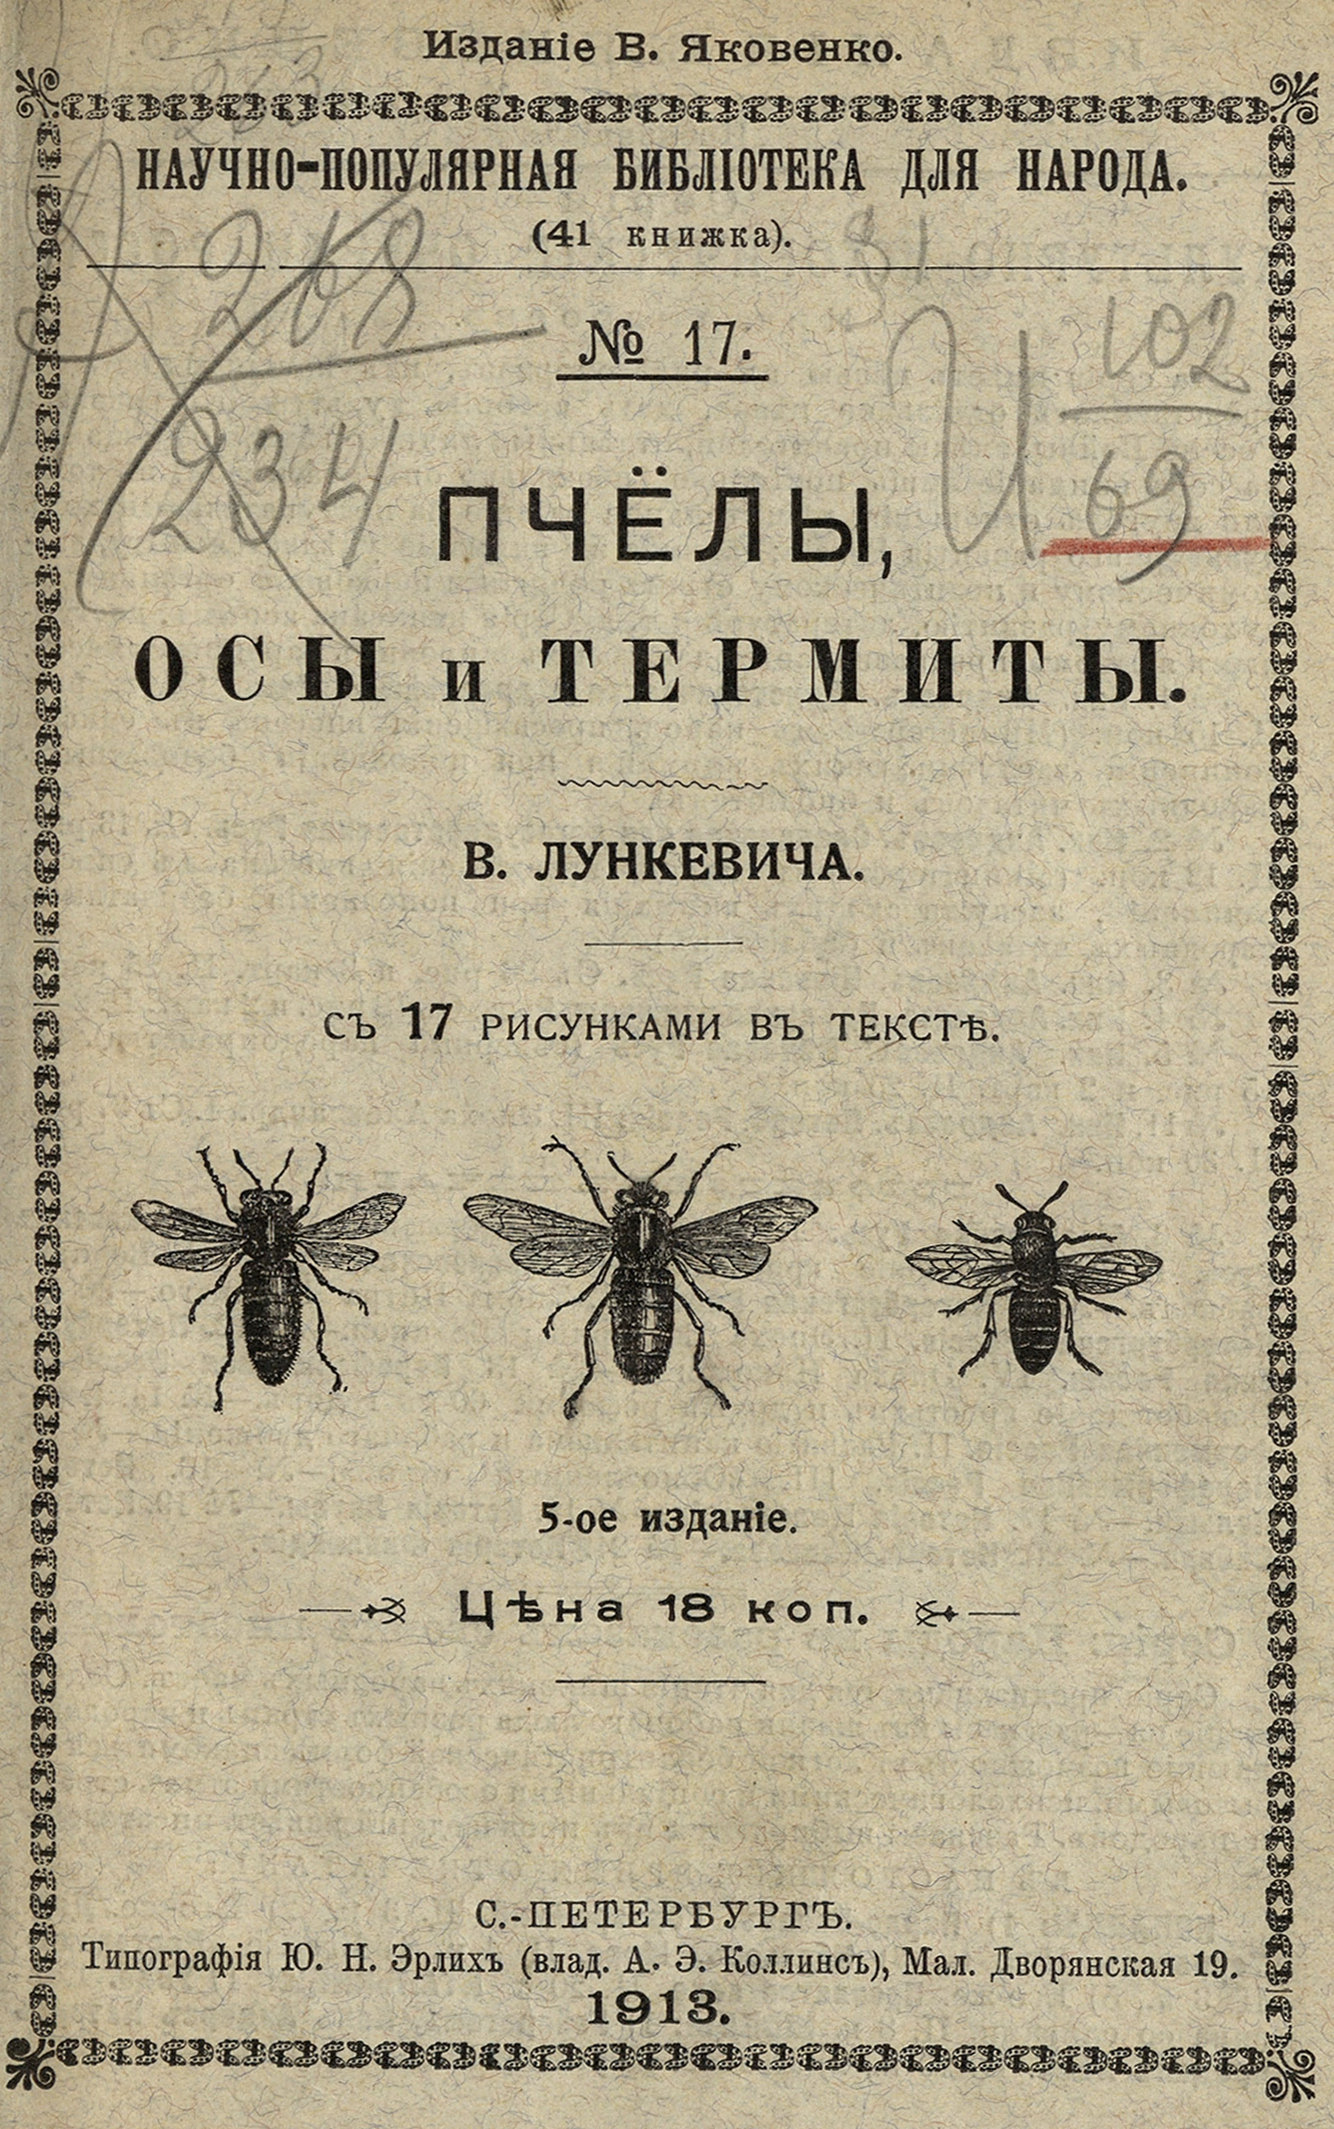 Пчелы, осы и термиты